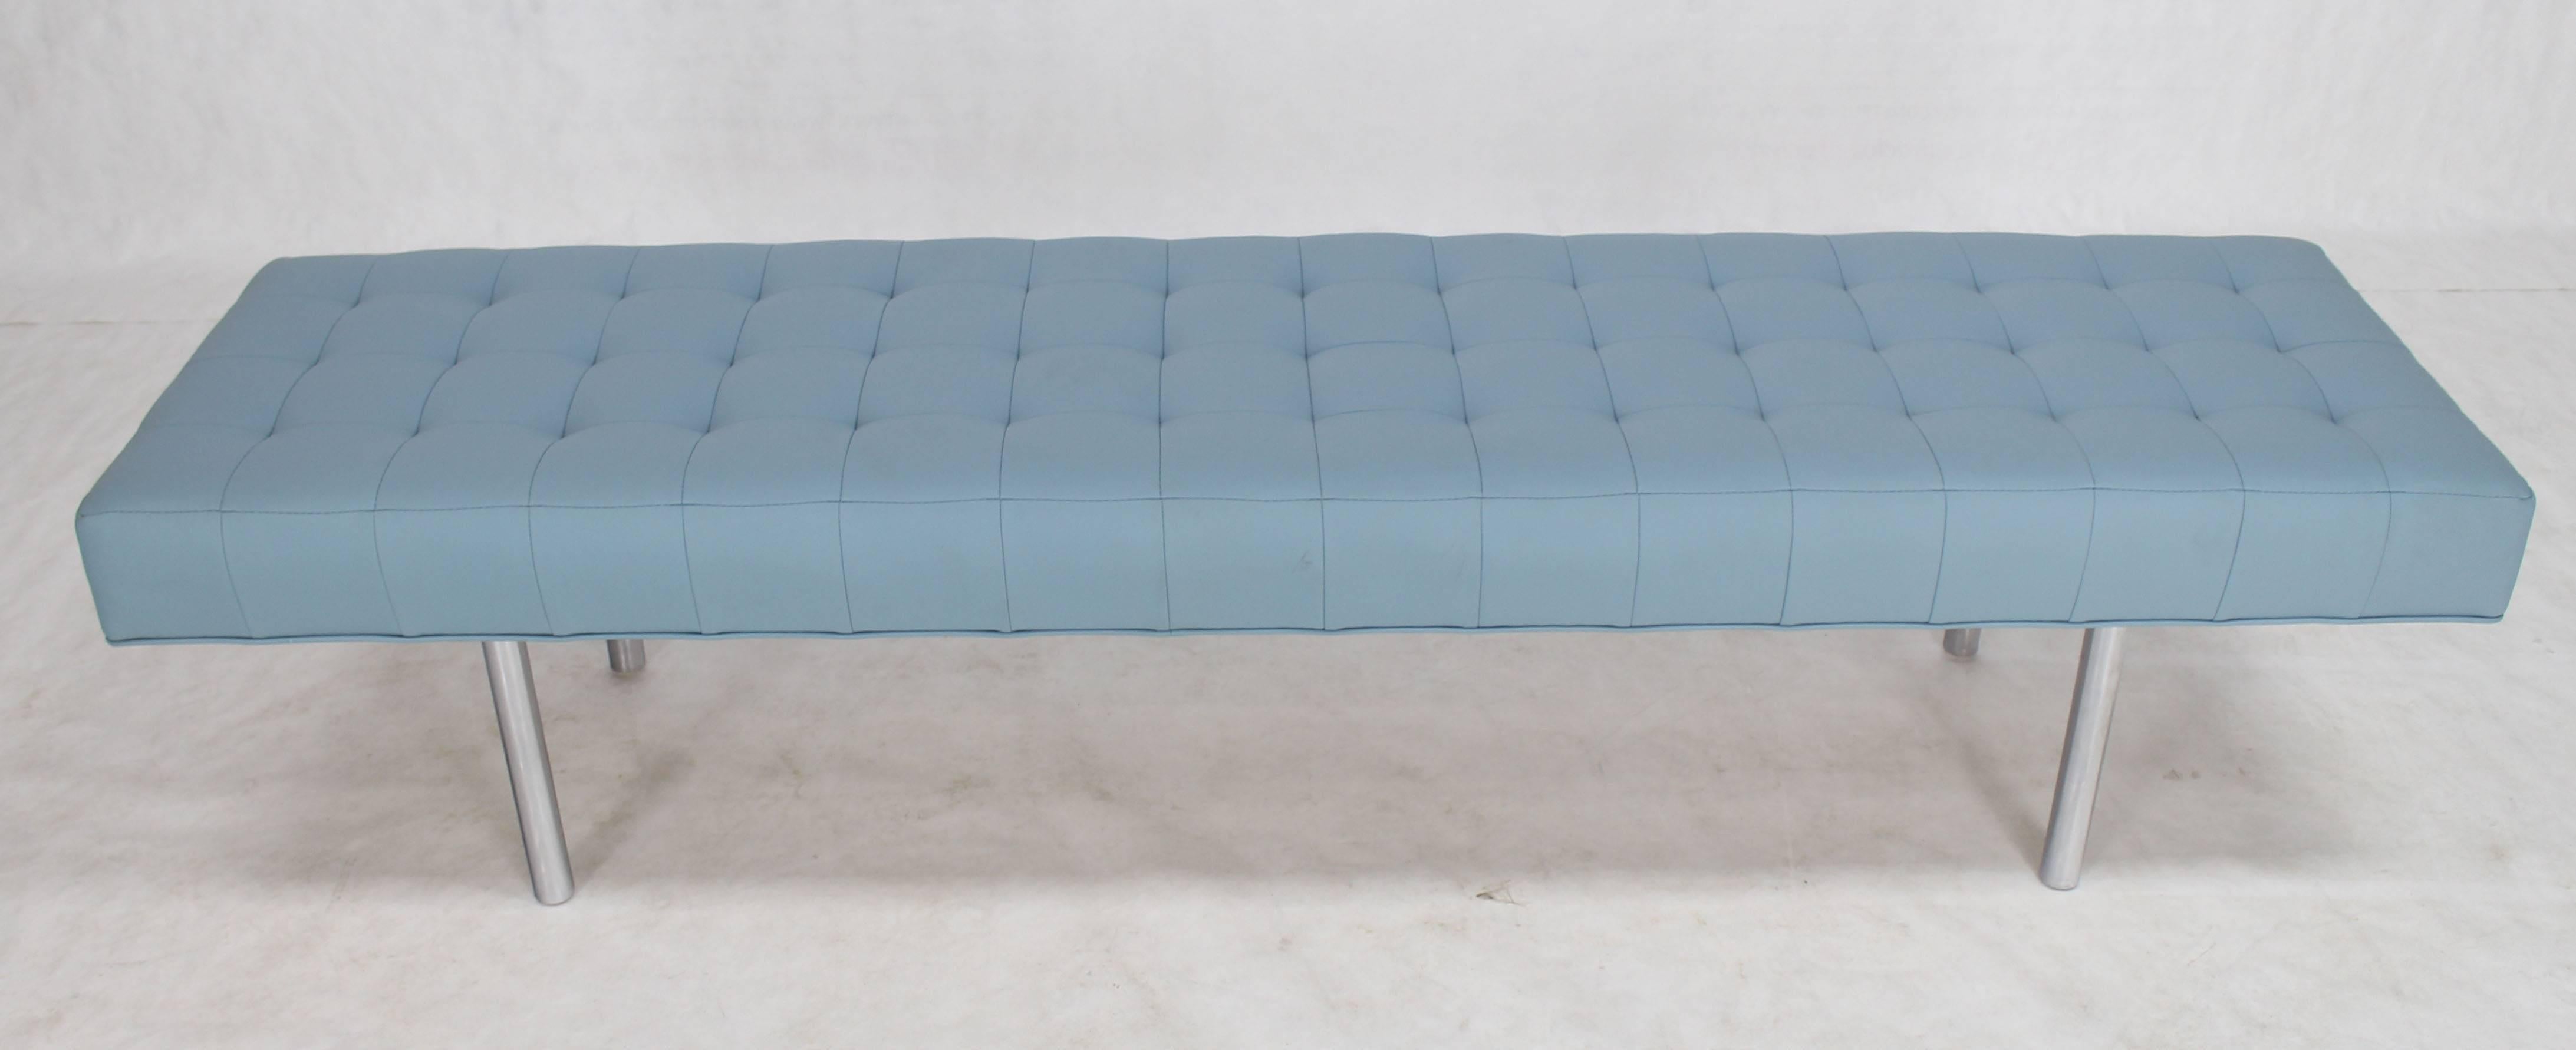 Light blue tufted modern upholstery bench.